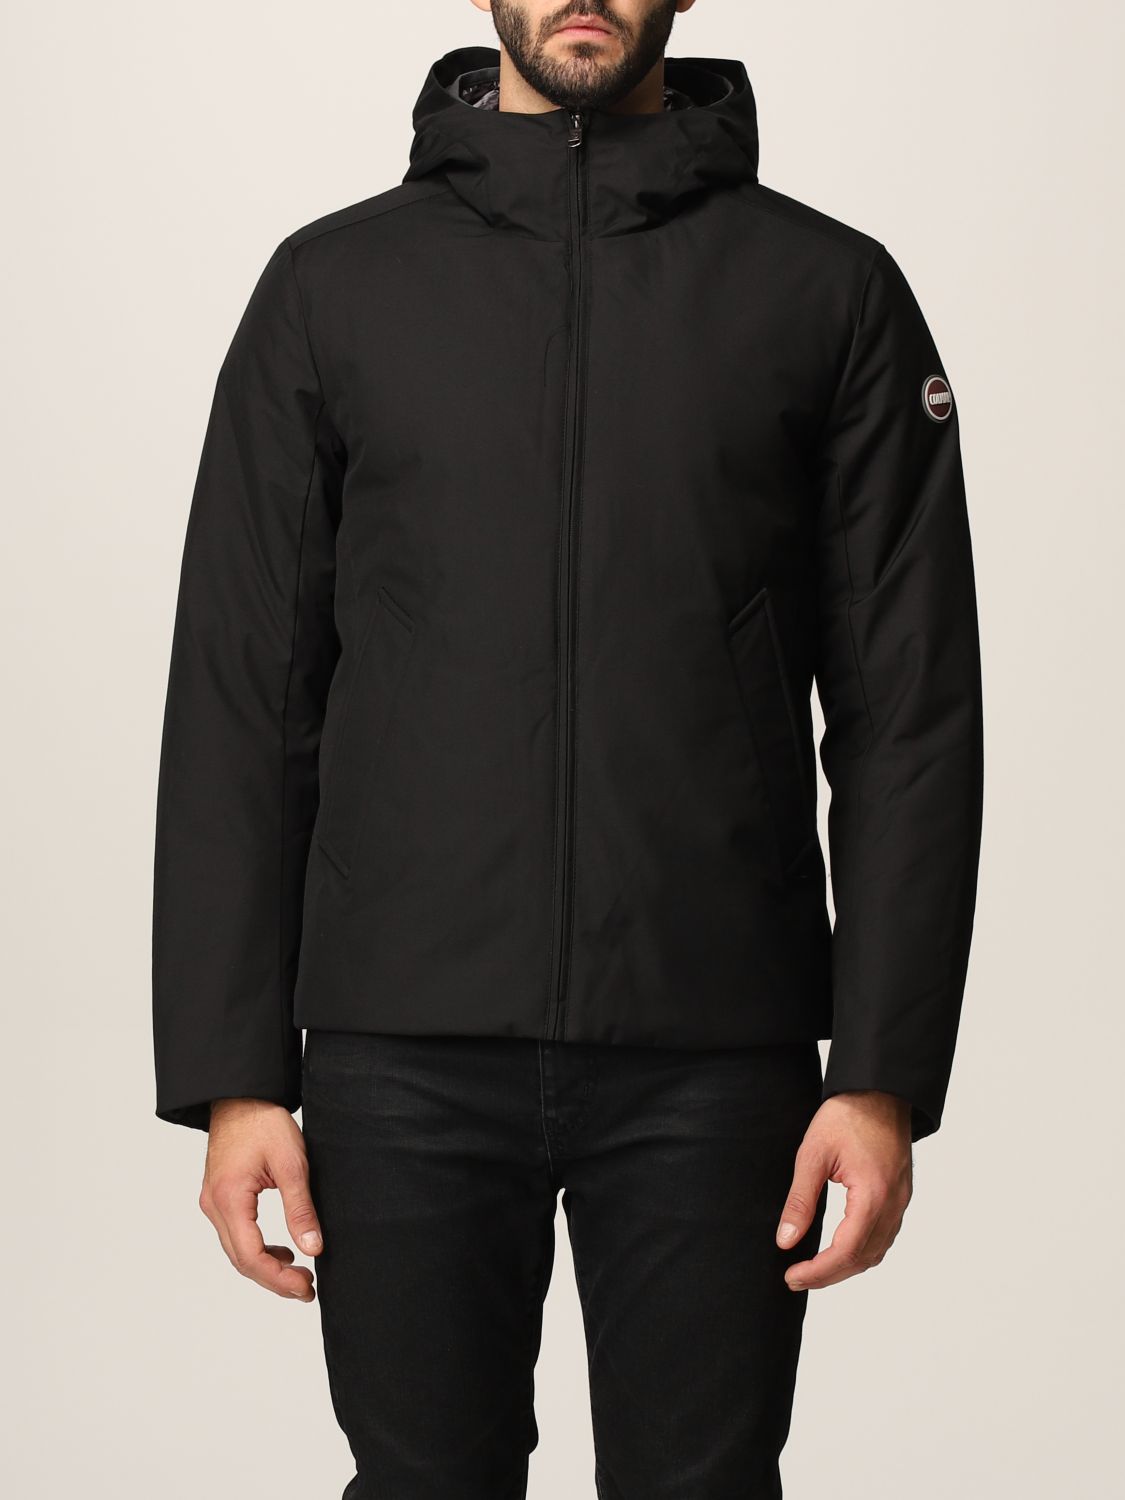 COLMAR: jacket for man - Black | Colmar jacket 1287 8UX online on ...